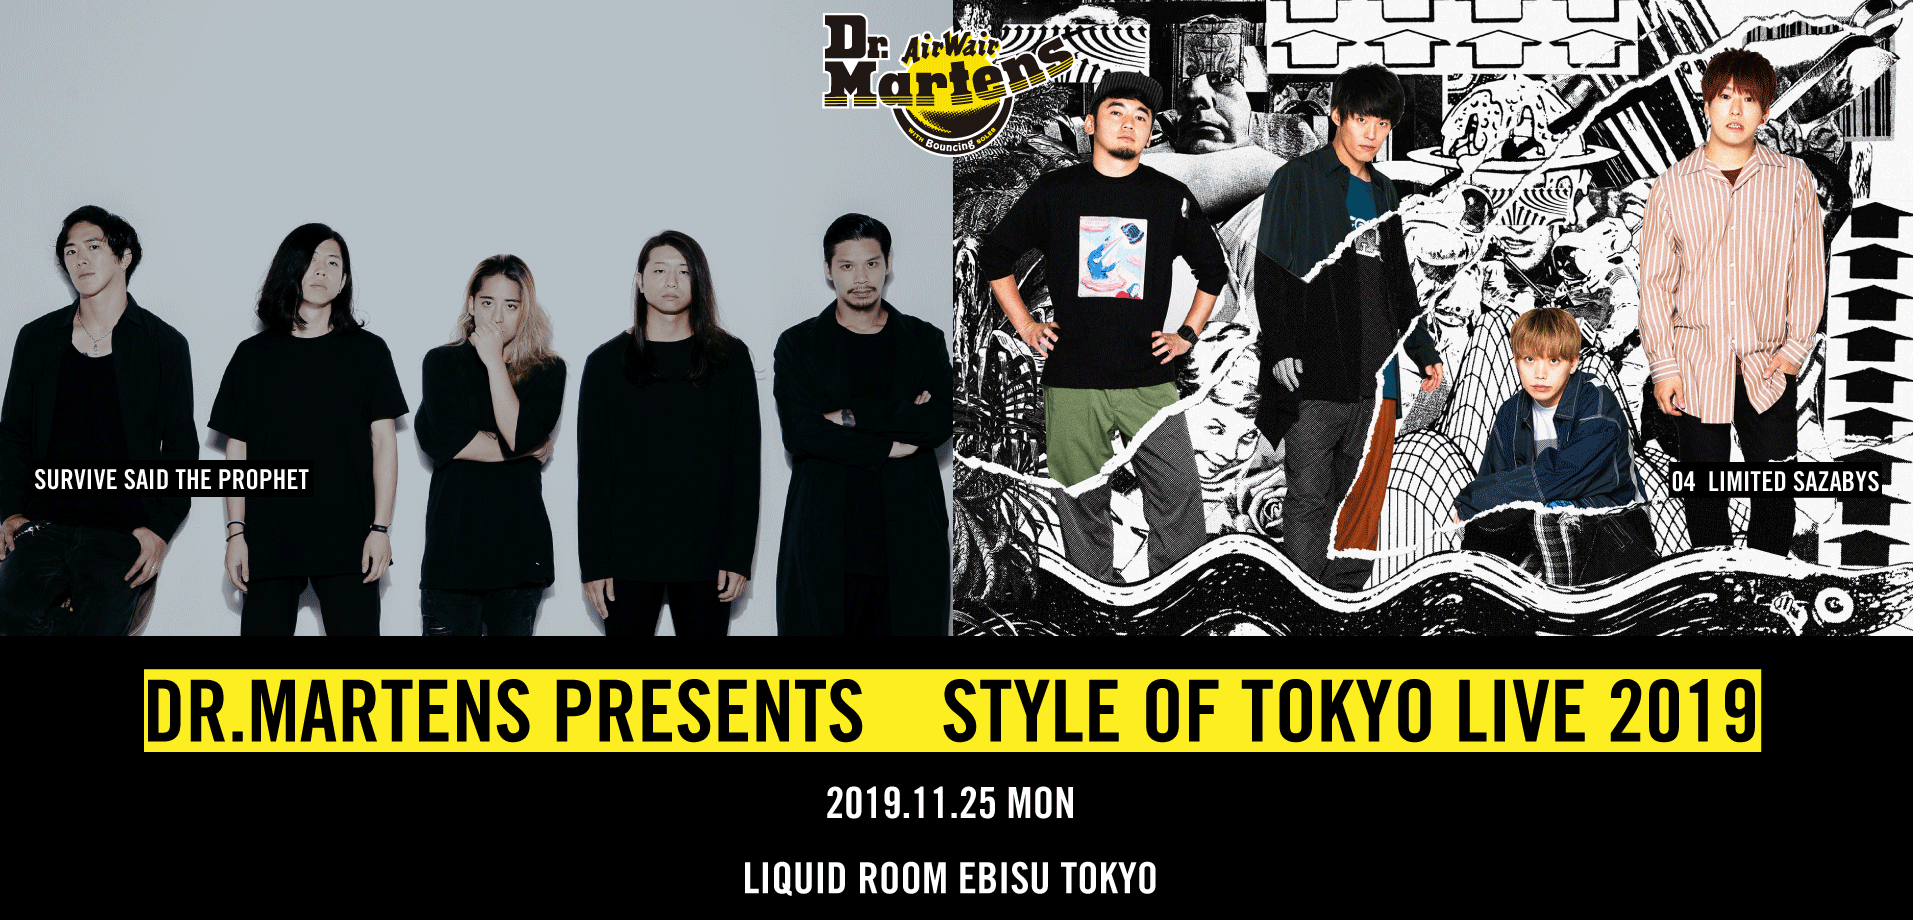 【東京】DR.MARTENS presents STYLE of TOKYO LIVE 2019 (恵比寿LIQUIDROOM)